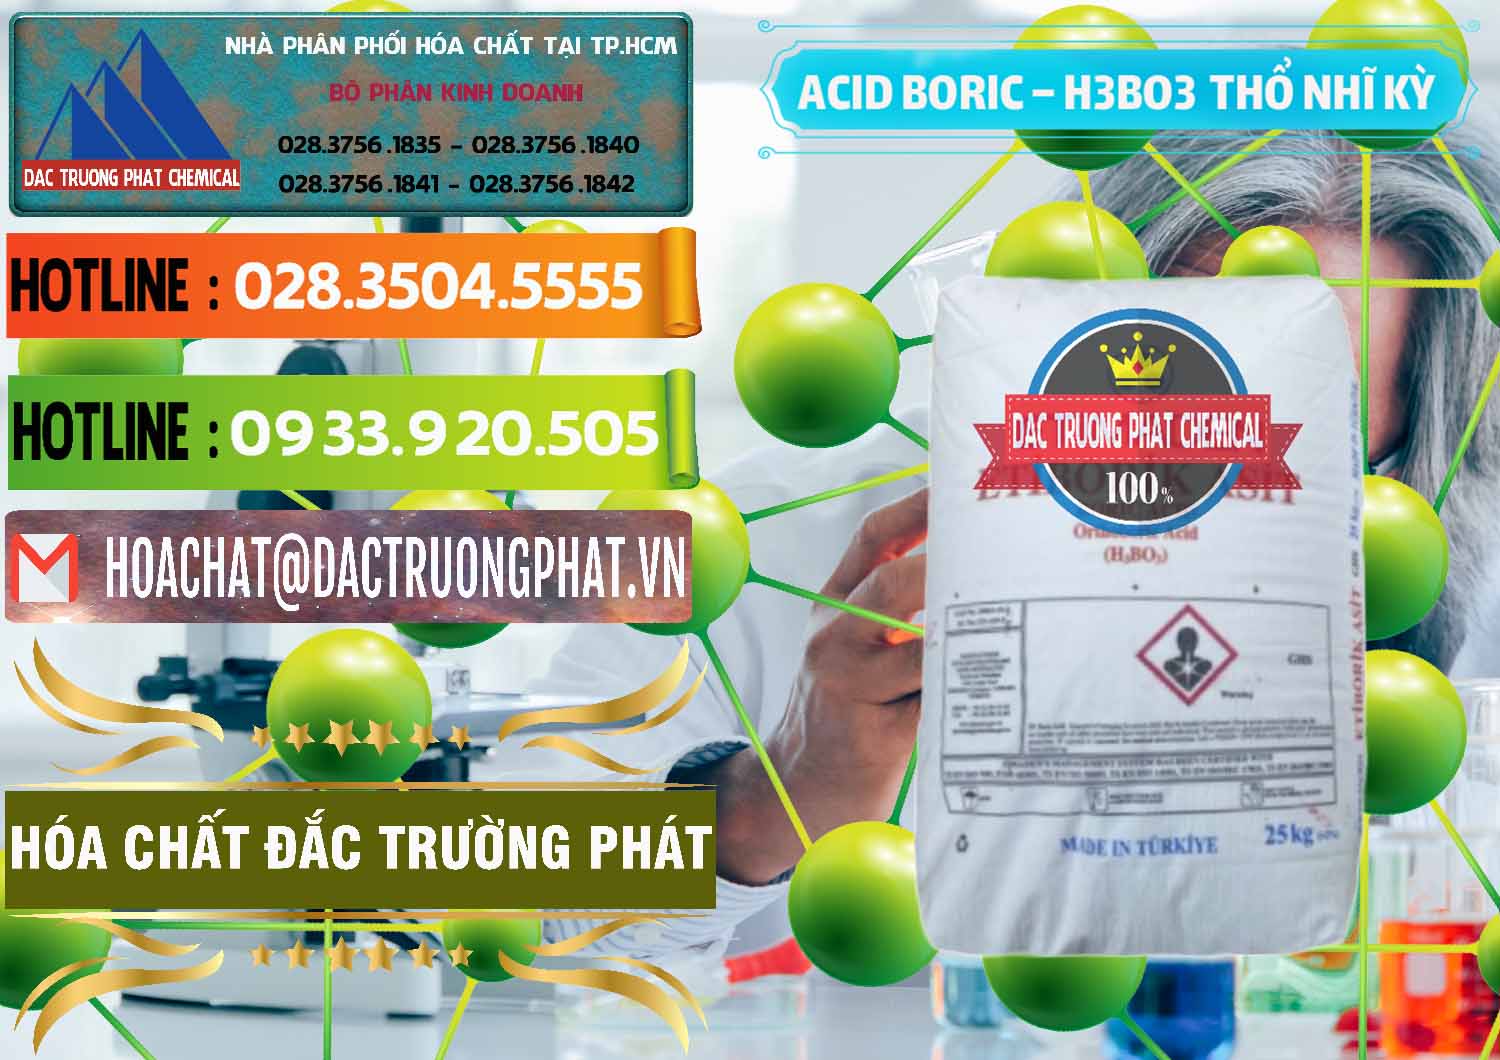 Cty chuyên bán & cung ứng Acid Boric – Axit Boric H3BO3 Etimaden Thổ Nhĩ Kỳ Turkey - 0369 - Nơi chuyên phân phối và kinh doanh hóa chất tại TP.HCM - cungcaphoachat.com.vn